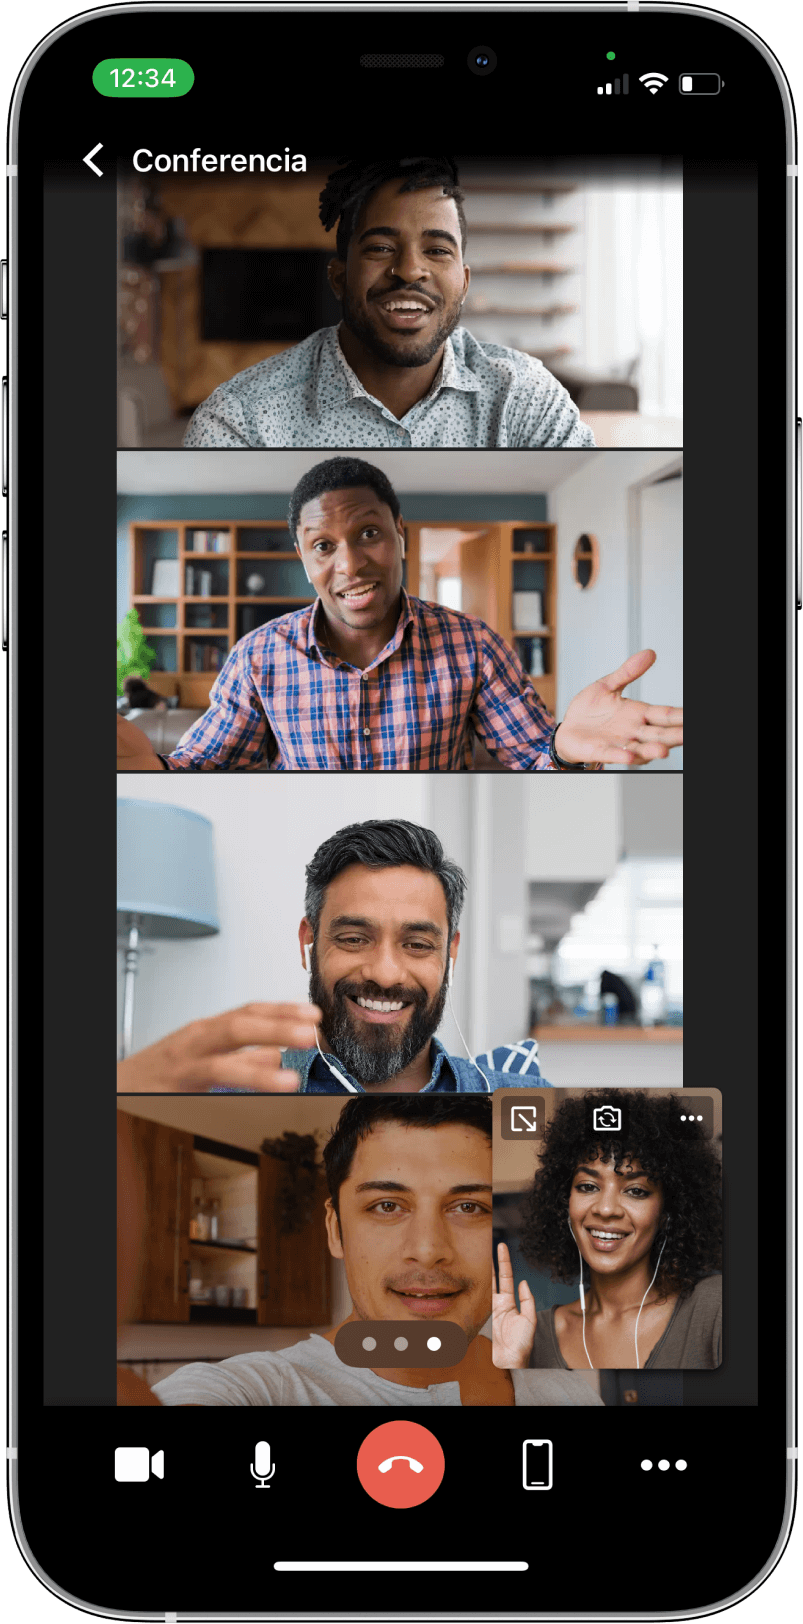 TrueConf 3.3 para iOS: nueva interfaz de usuario, modo de reunión inteligente, acceso sin conexión a chats, contactos e historial de llamadas 10